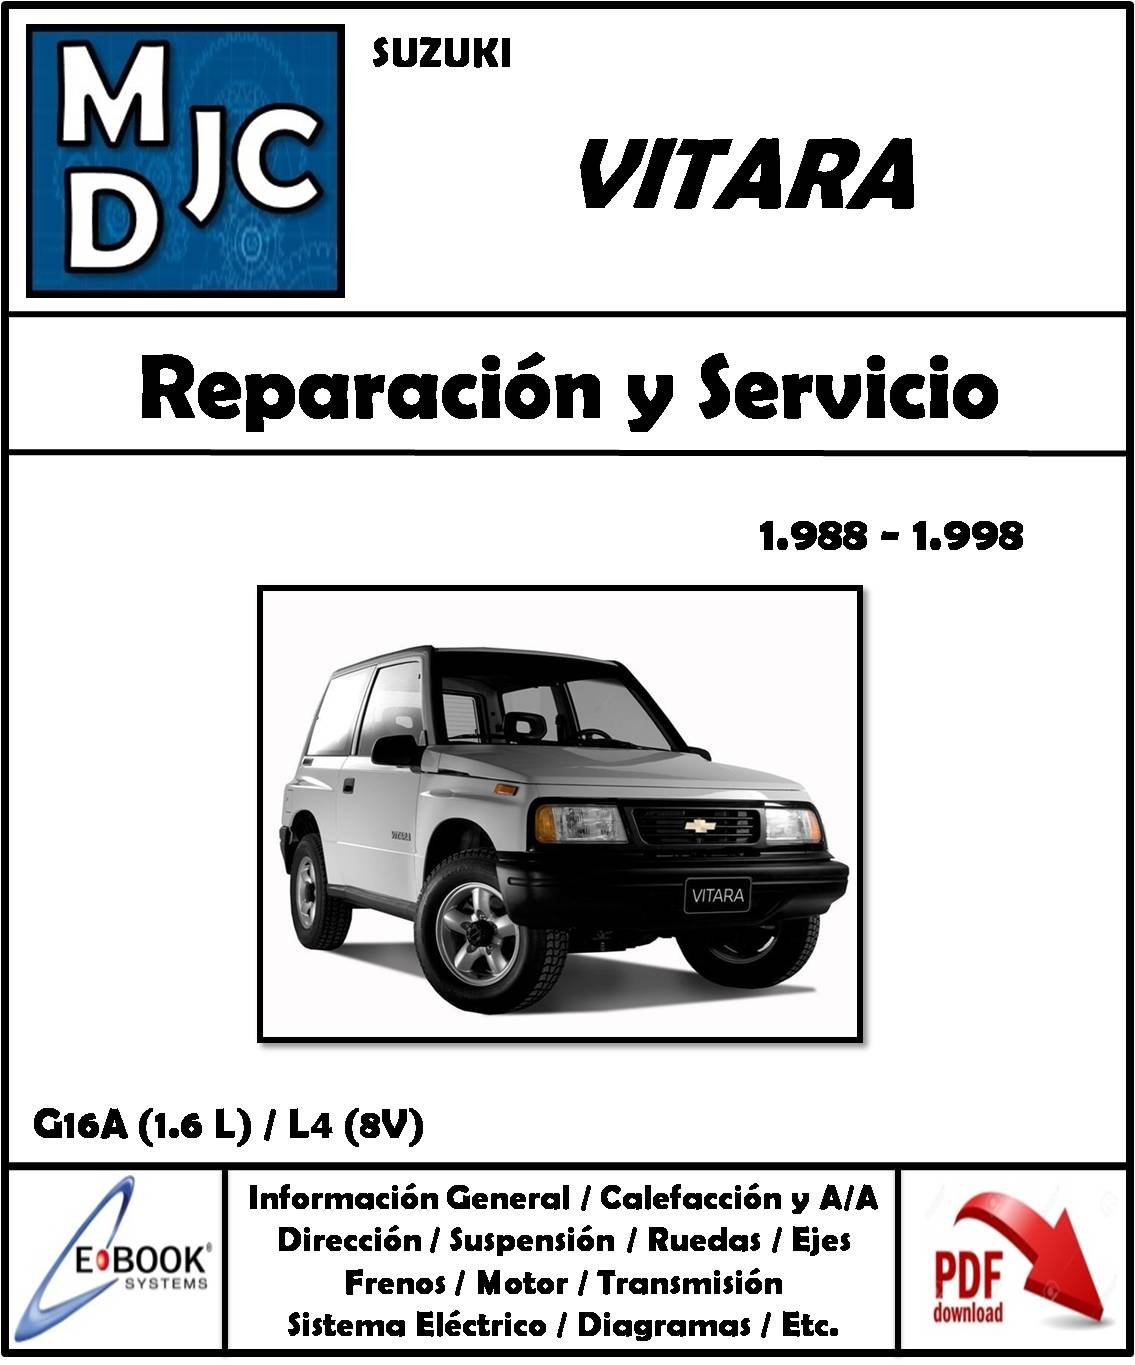 Chevrolet Suzuki Vitara 1988 - 1998